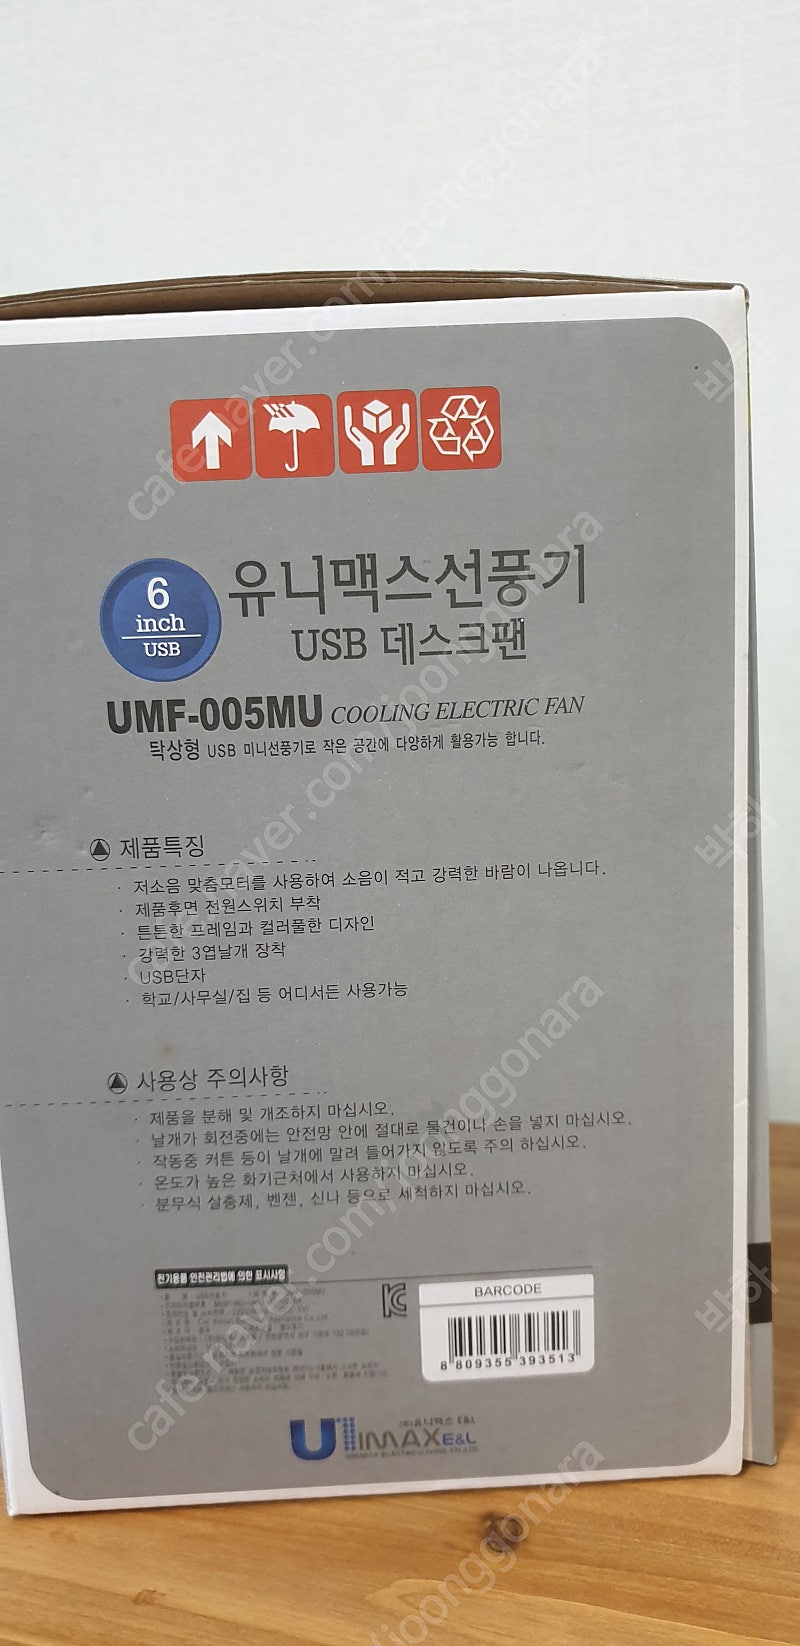 유니맥스 탁상형 미니선풍기/ umf-005mu/usb/6인치/새제품